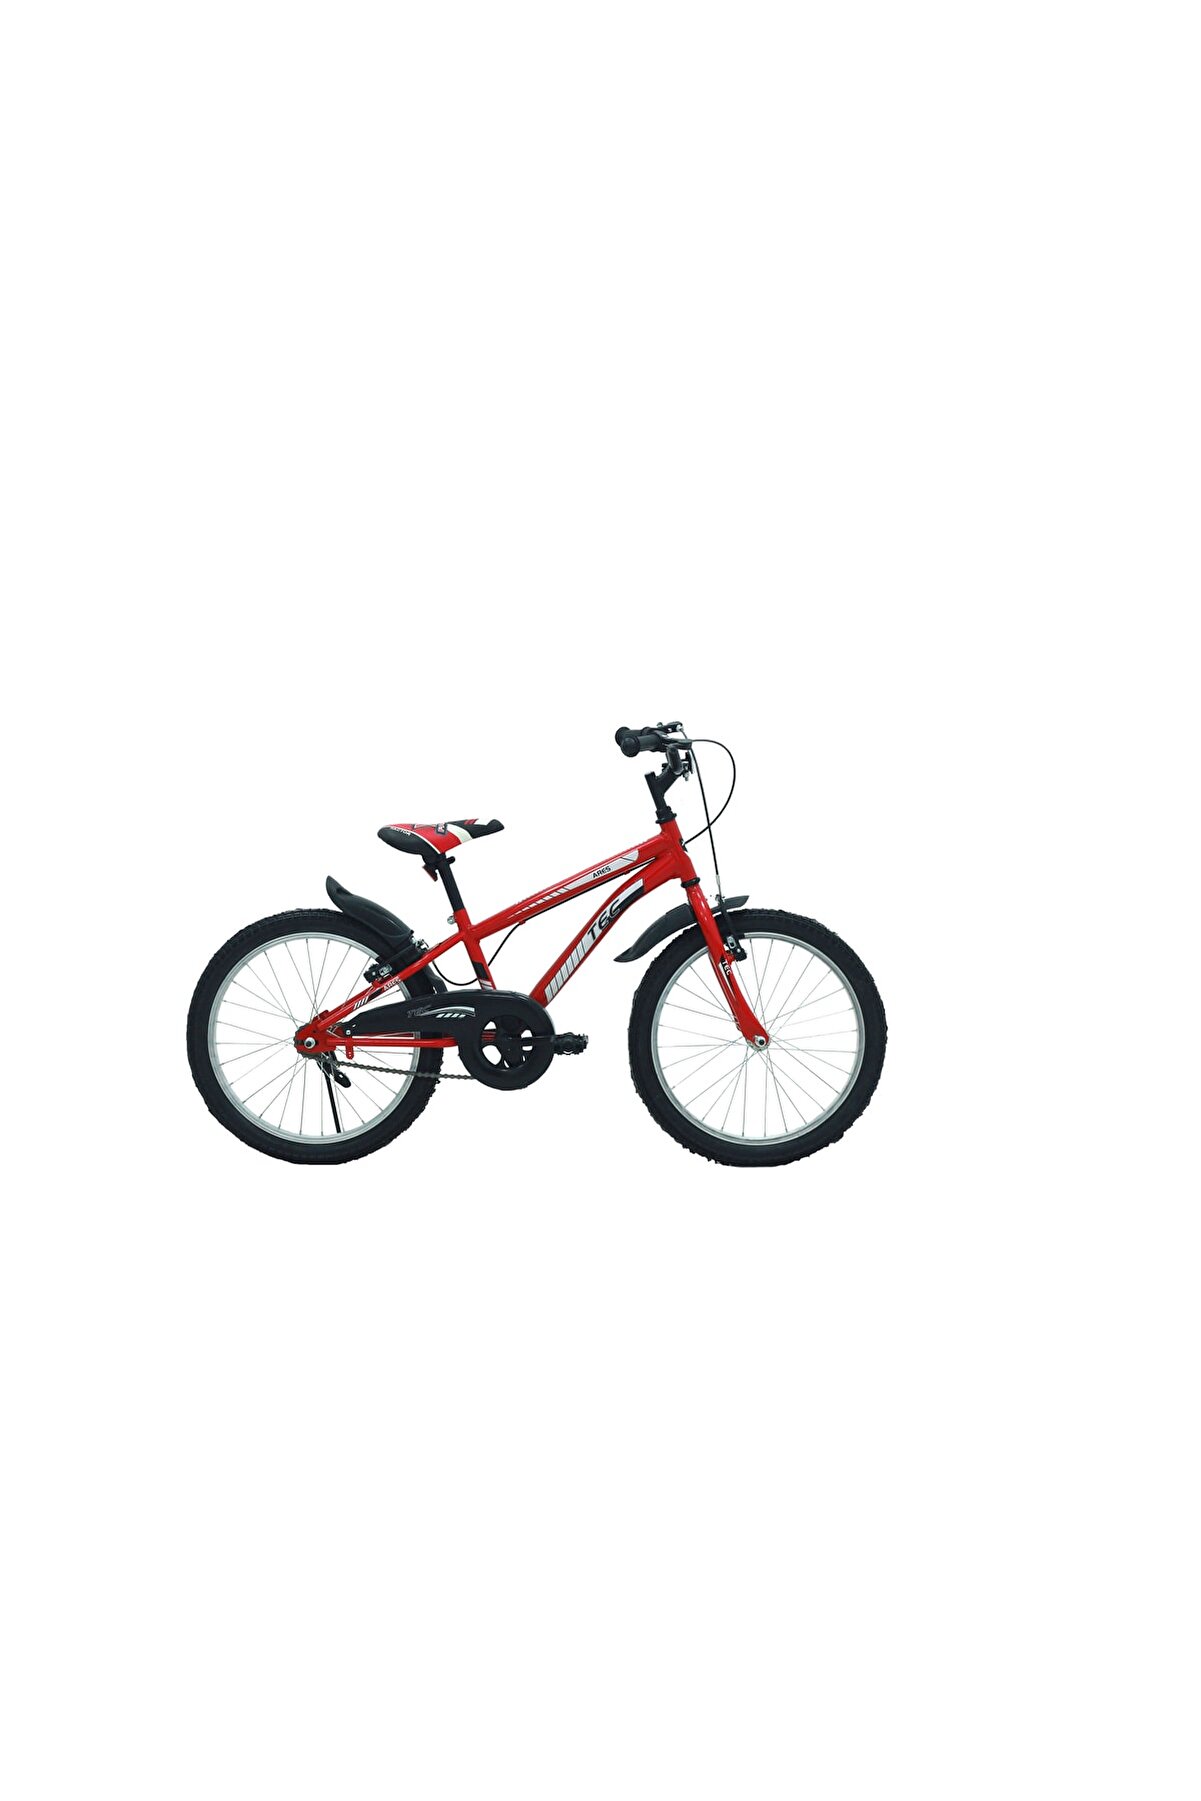 Tec Belderia Ares 20" Jant Vitessiz V-fren Kırmızı Çocuk Bisikleti